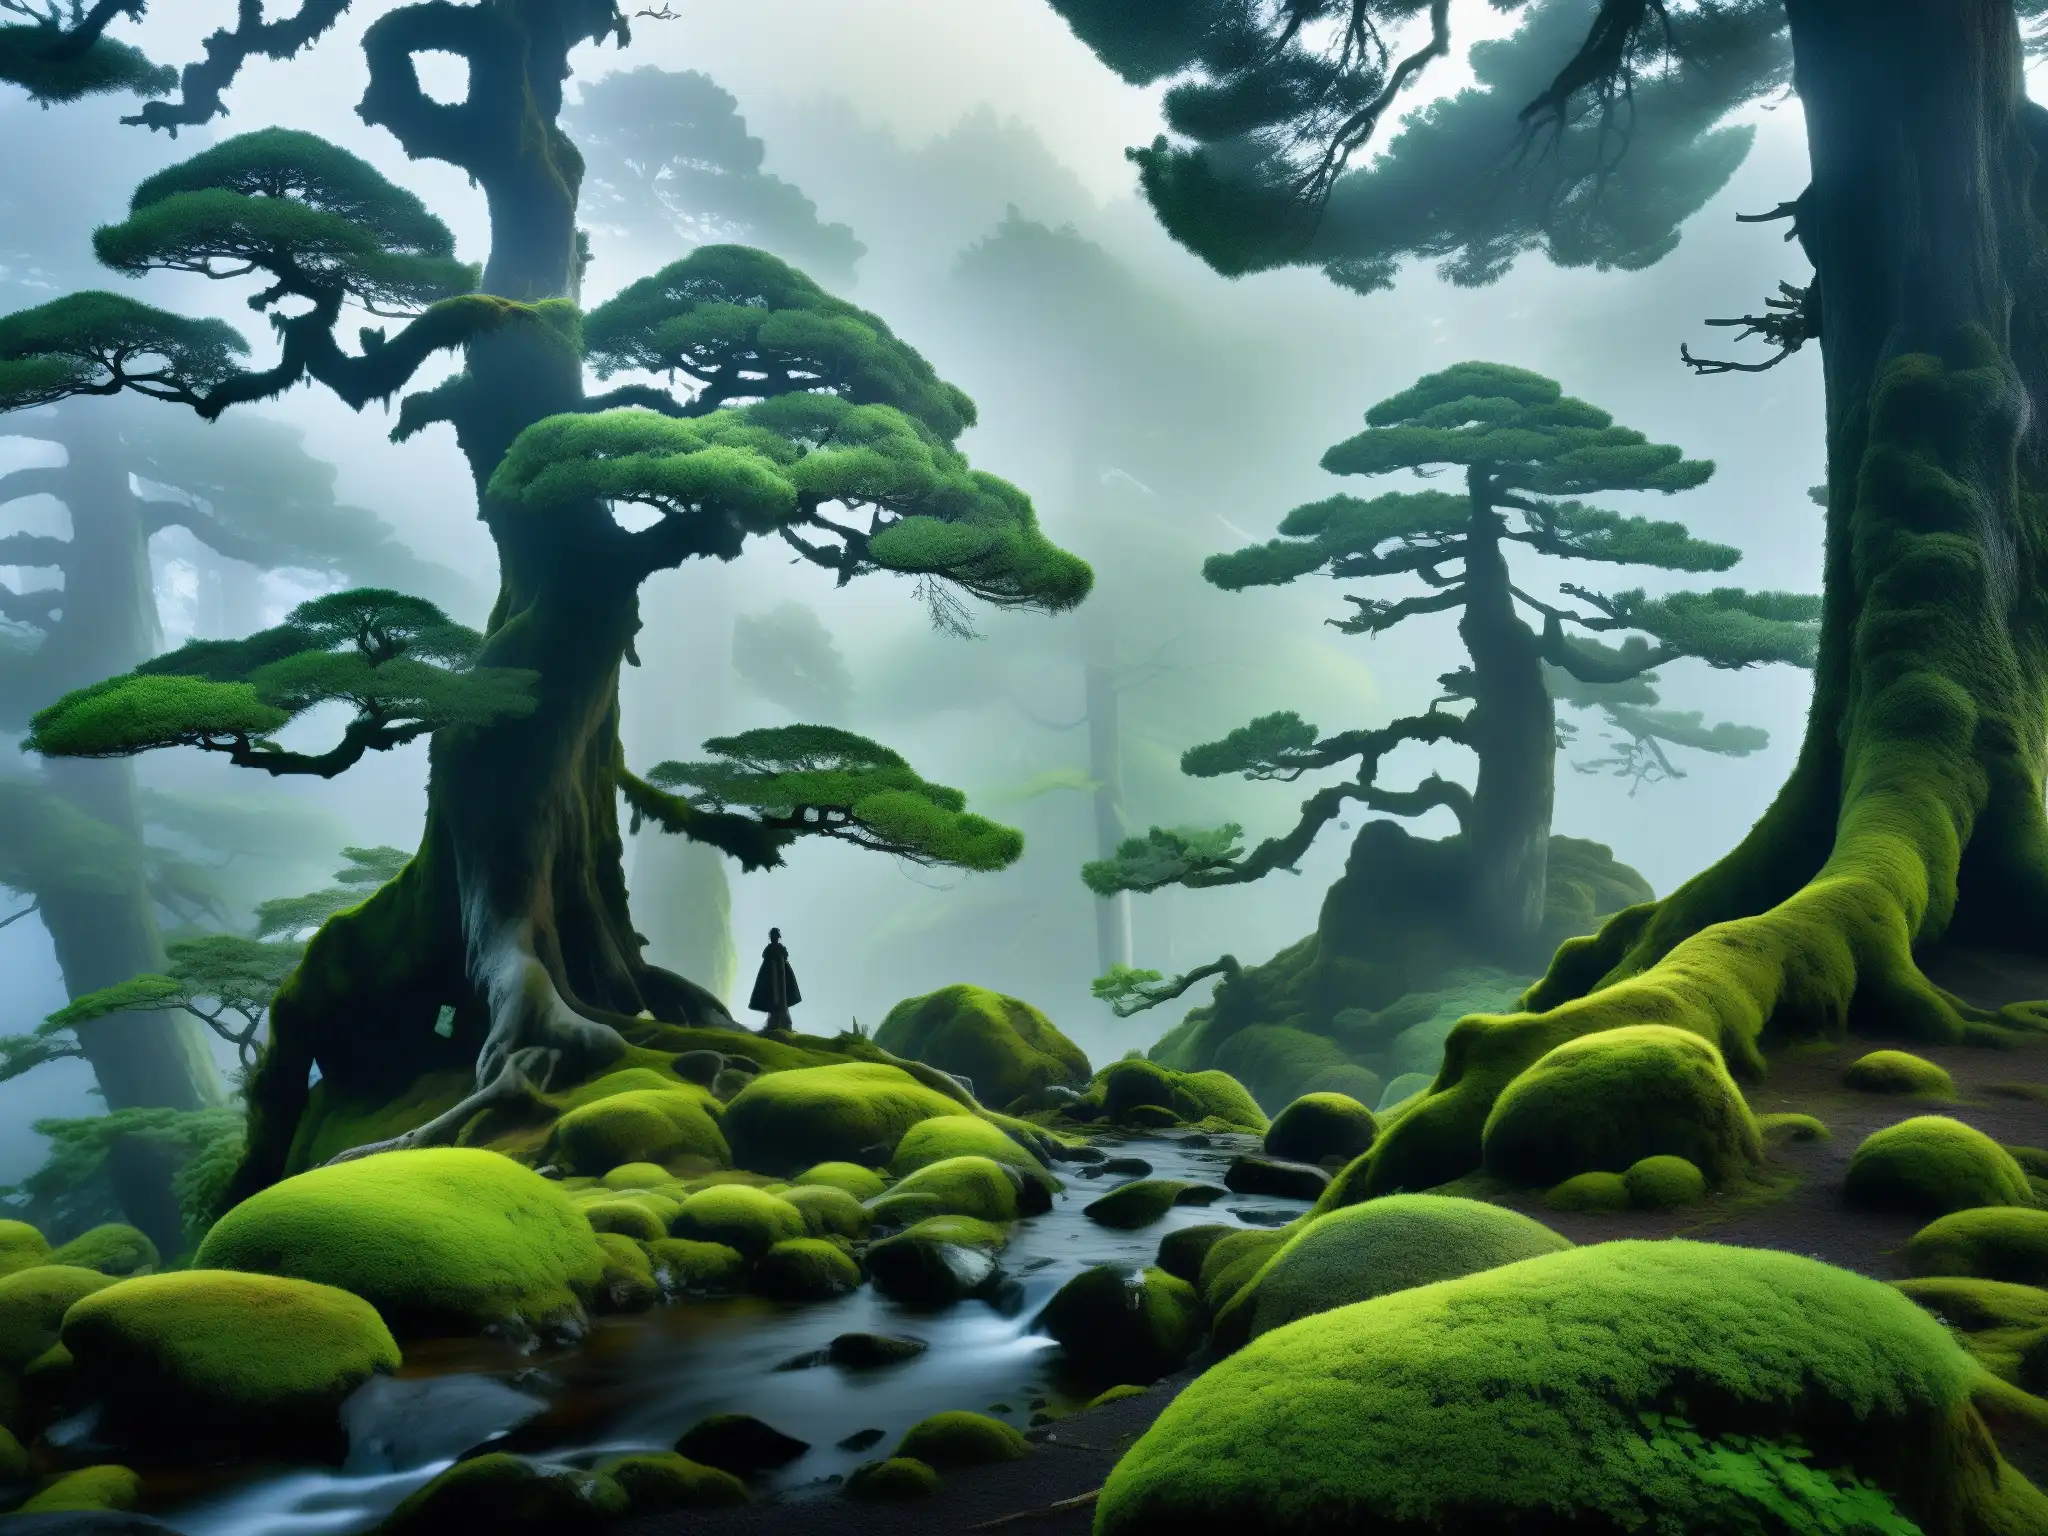 Una leyenda japonesa lamento eterno: un bosque antiguo envuelto en niebla al atardecer, con árboles retorcidos y musgosos entre la bruma